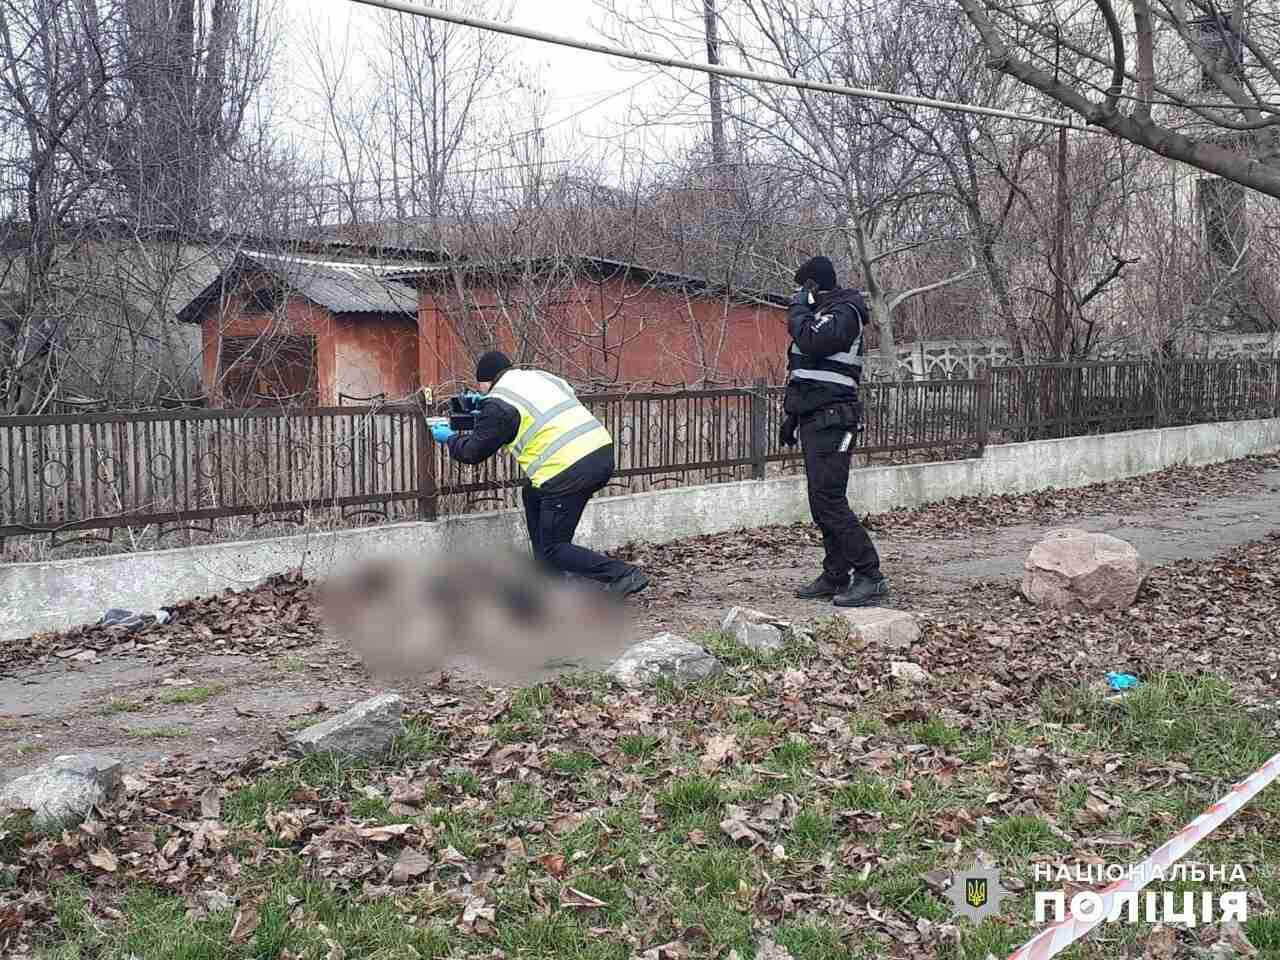 В військовій формі: на Одещині знайшли труп чоловіка на вулиці (ФОТО)